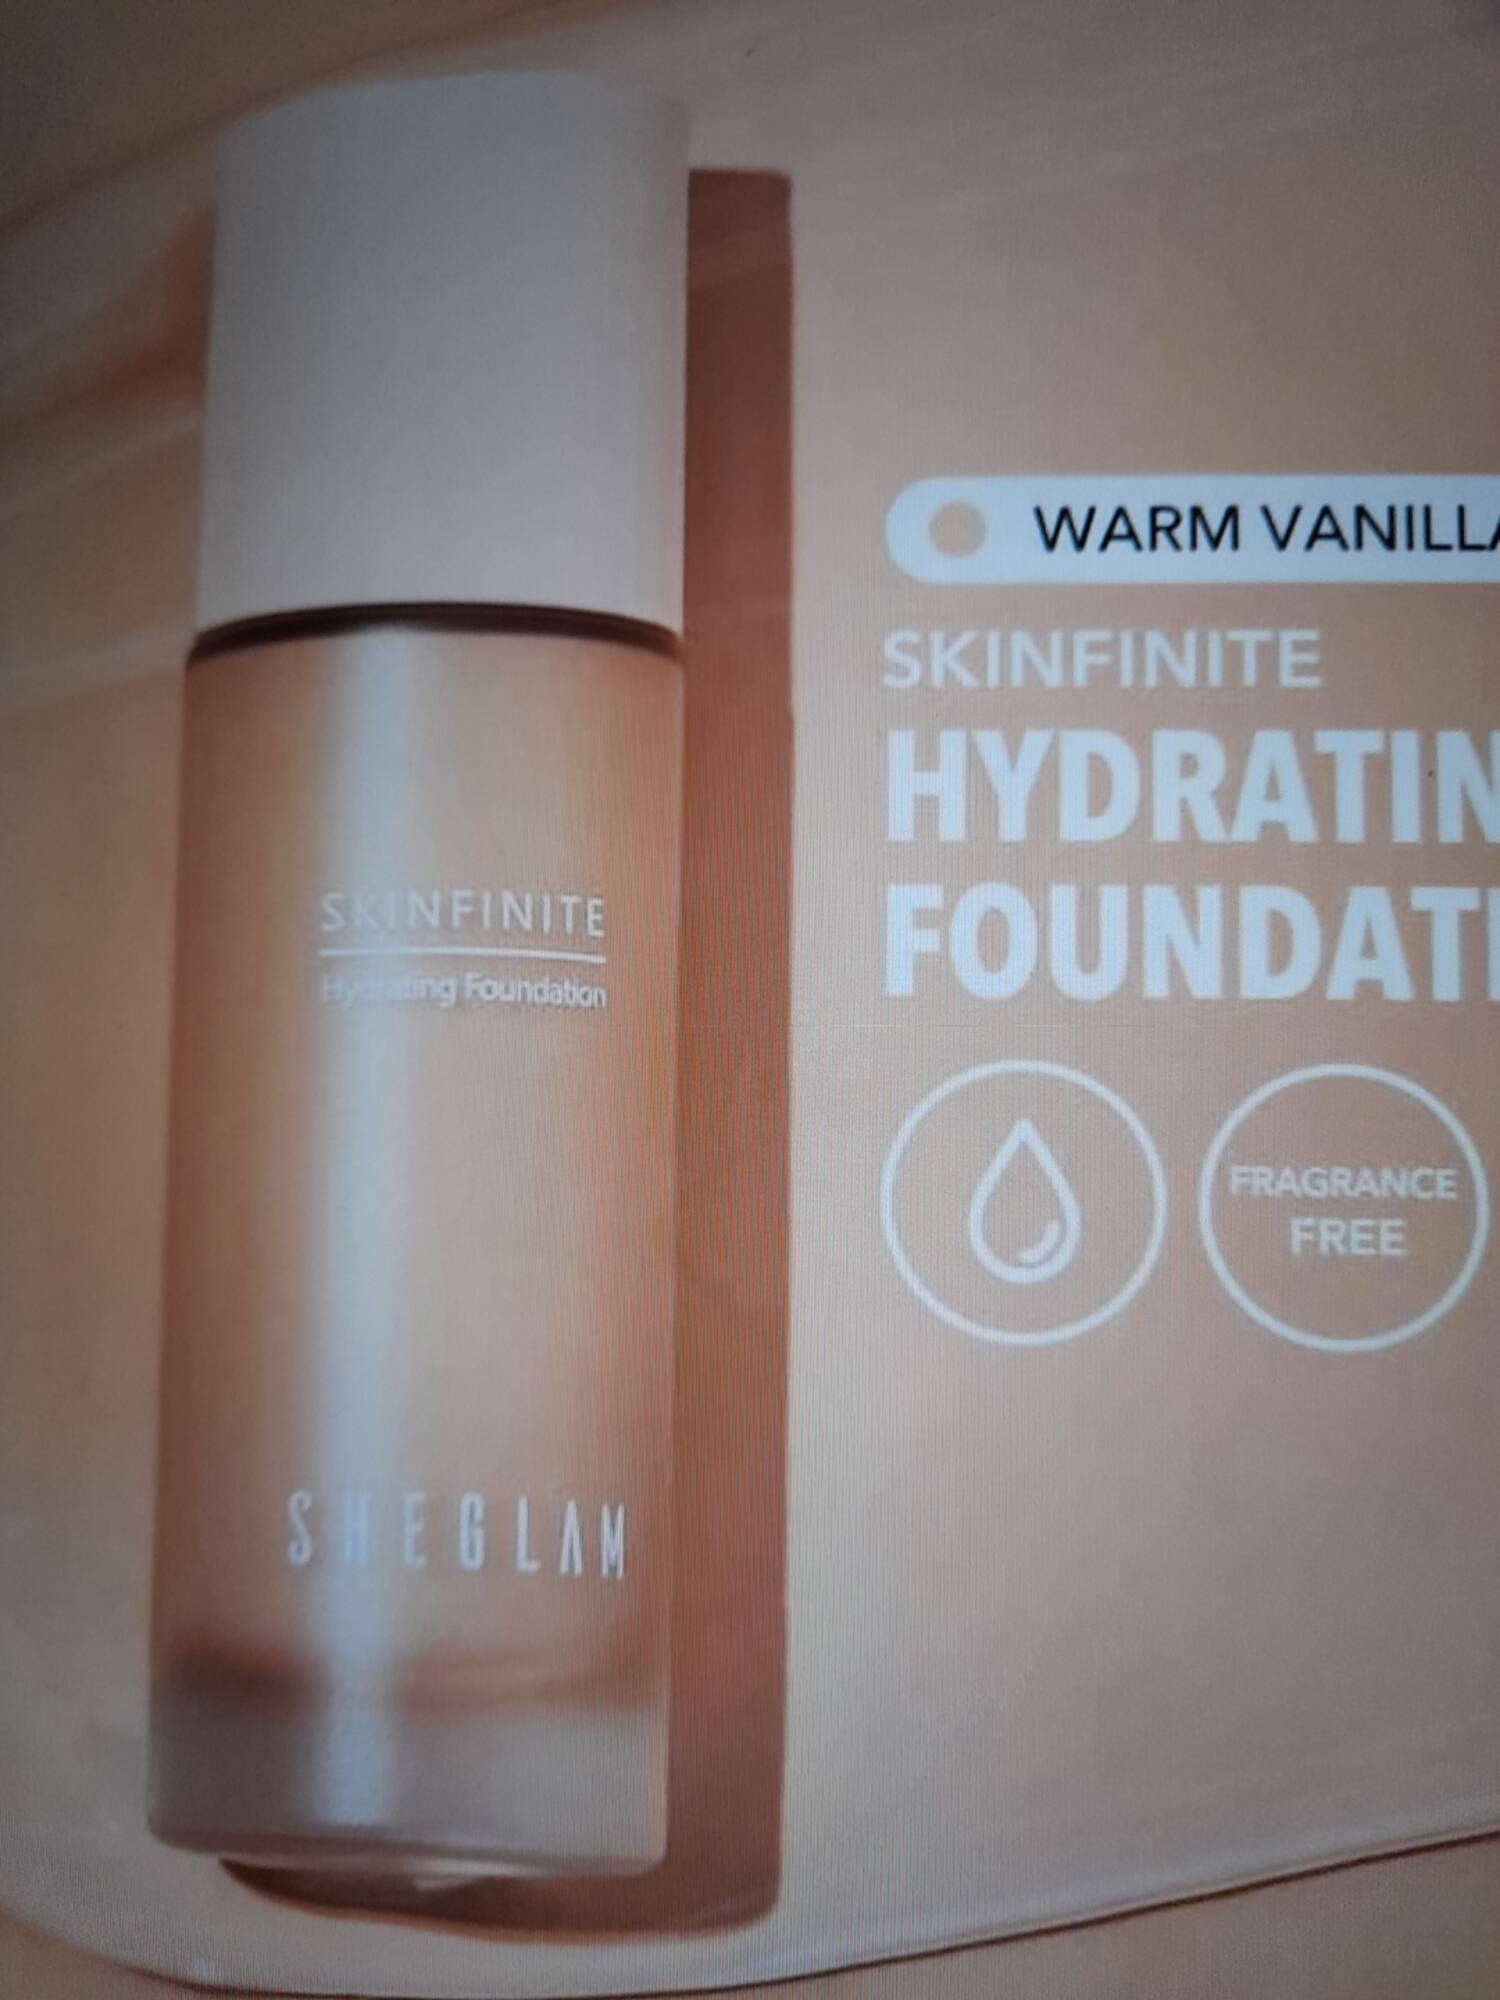 SHEGLAM - Skinfinite - Hydrating foundation